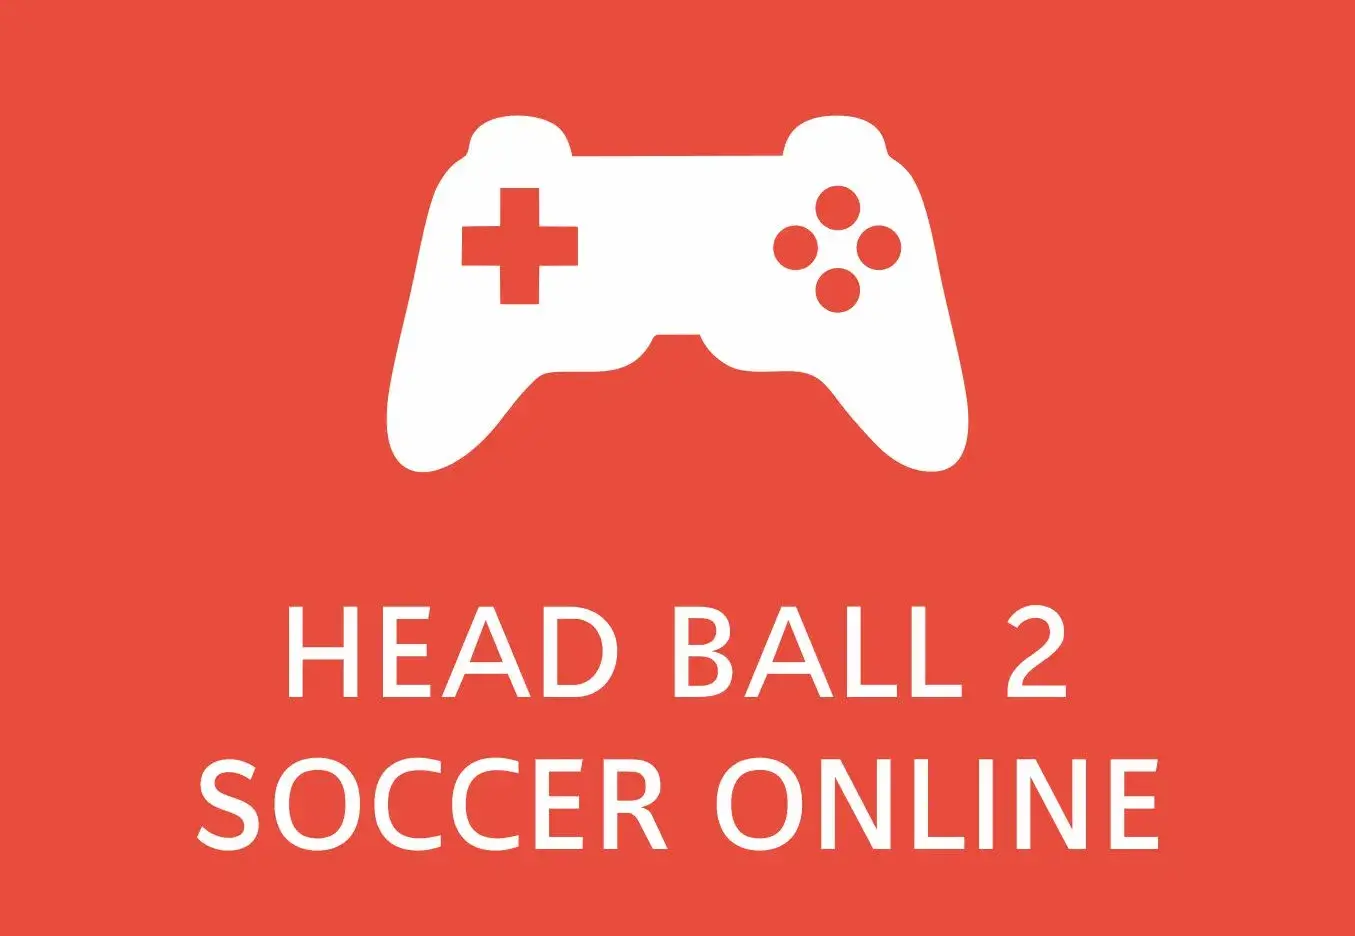 Head Ball 2 Online Soccer